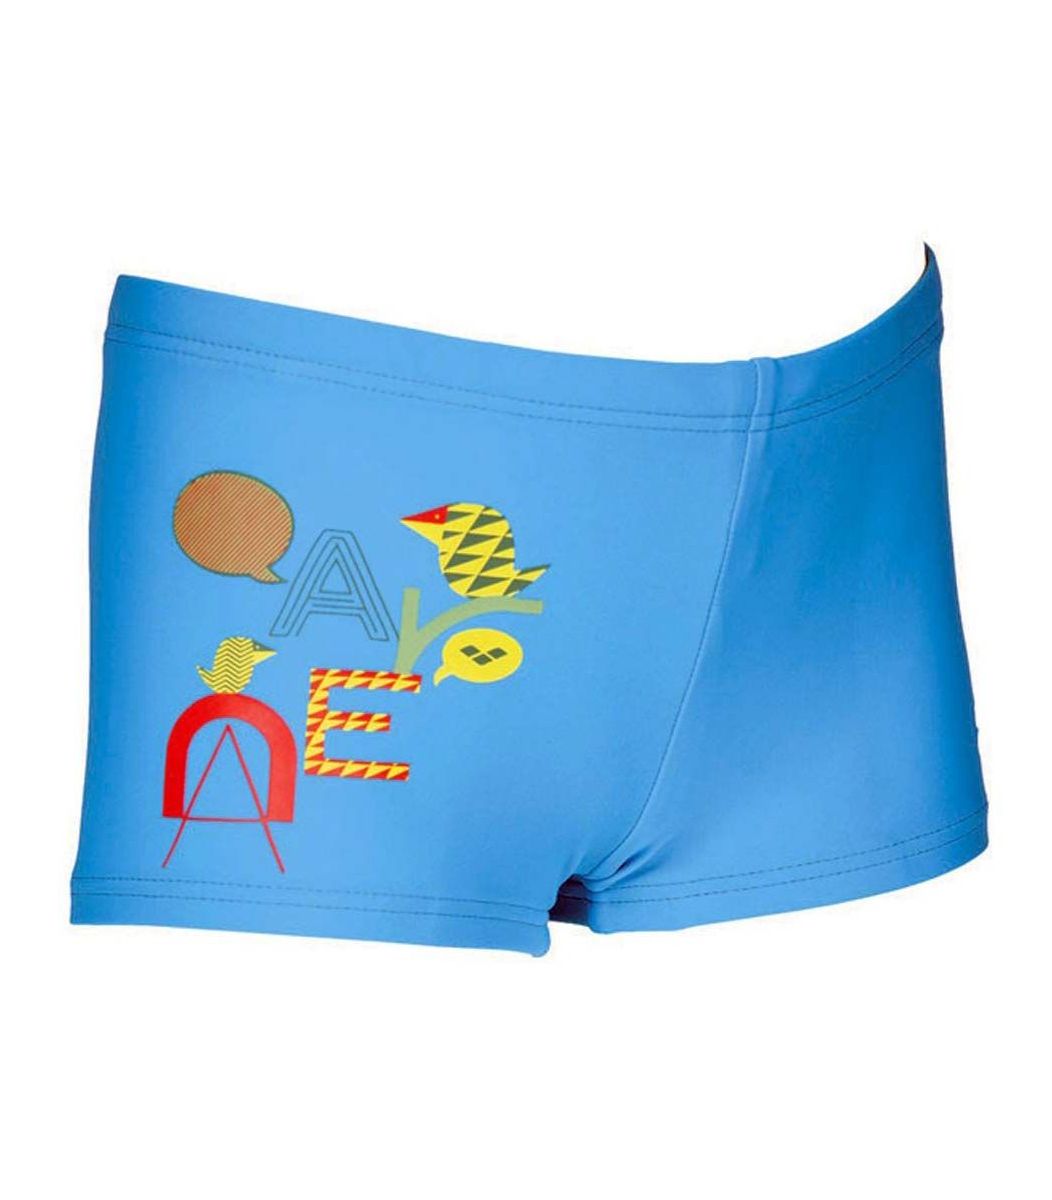  Μαγιό Arena Arena Boy Swimwear Hansel Kids Short 2A43785-1